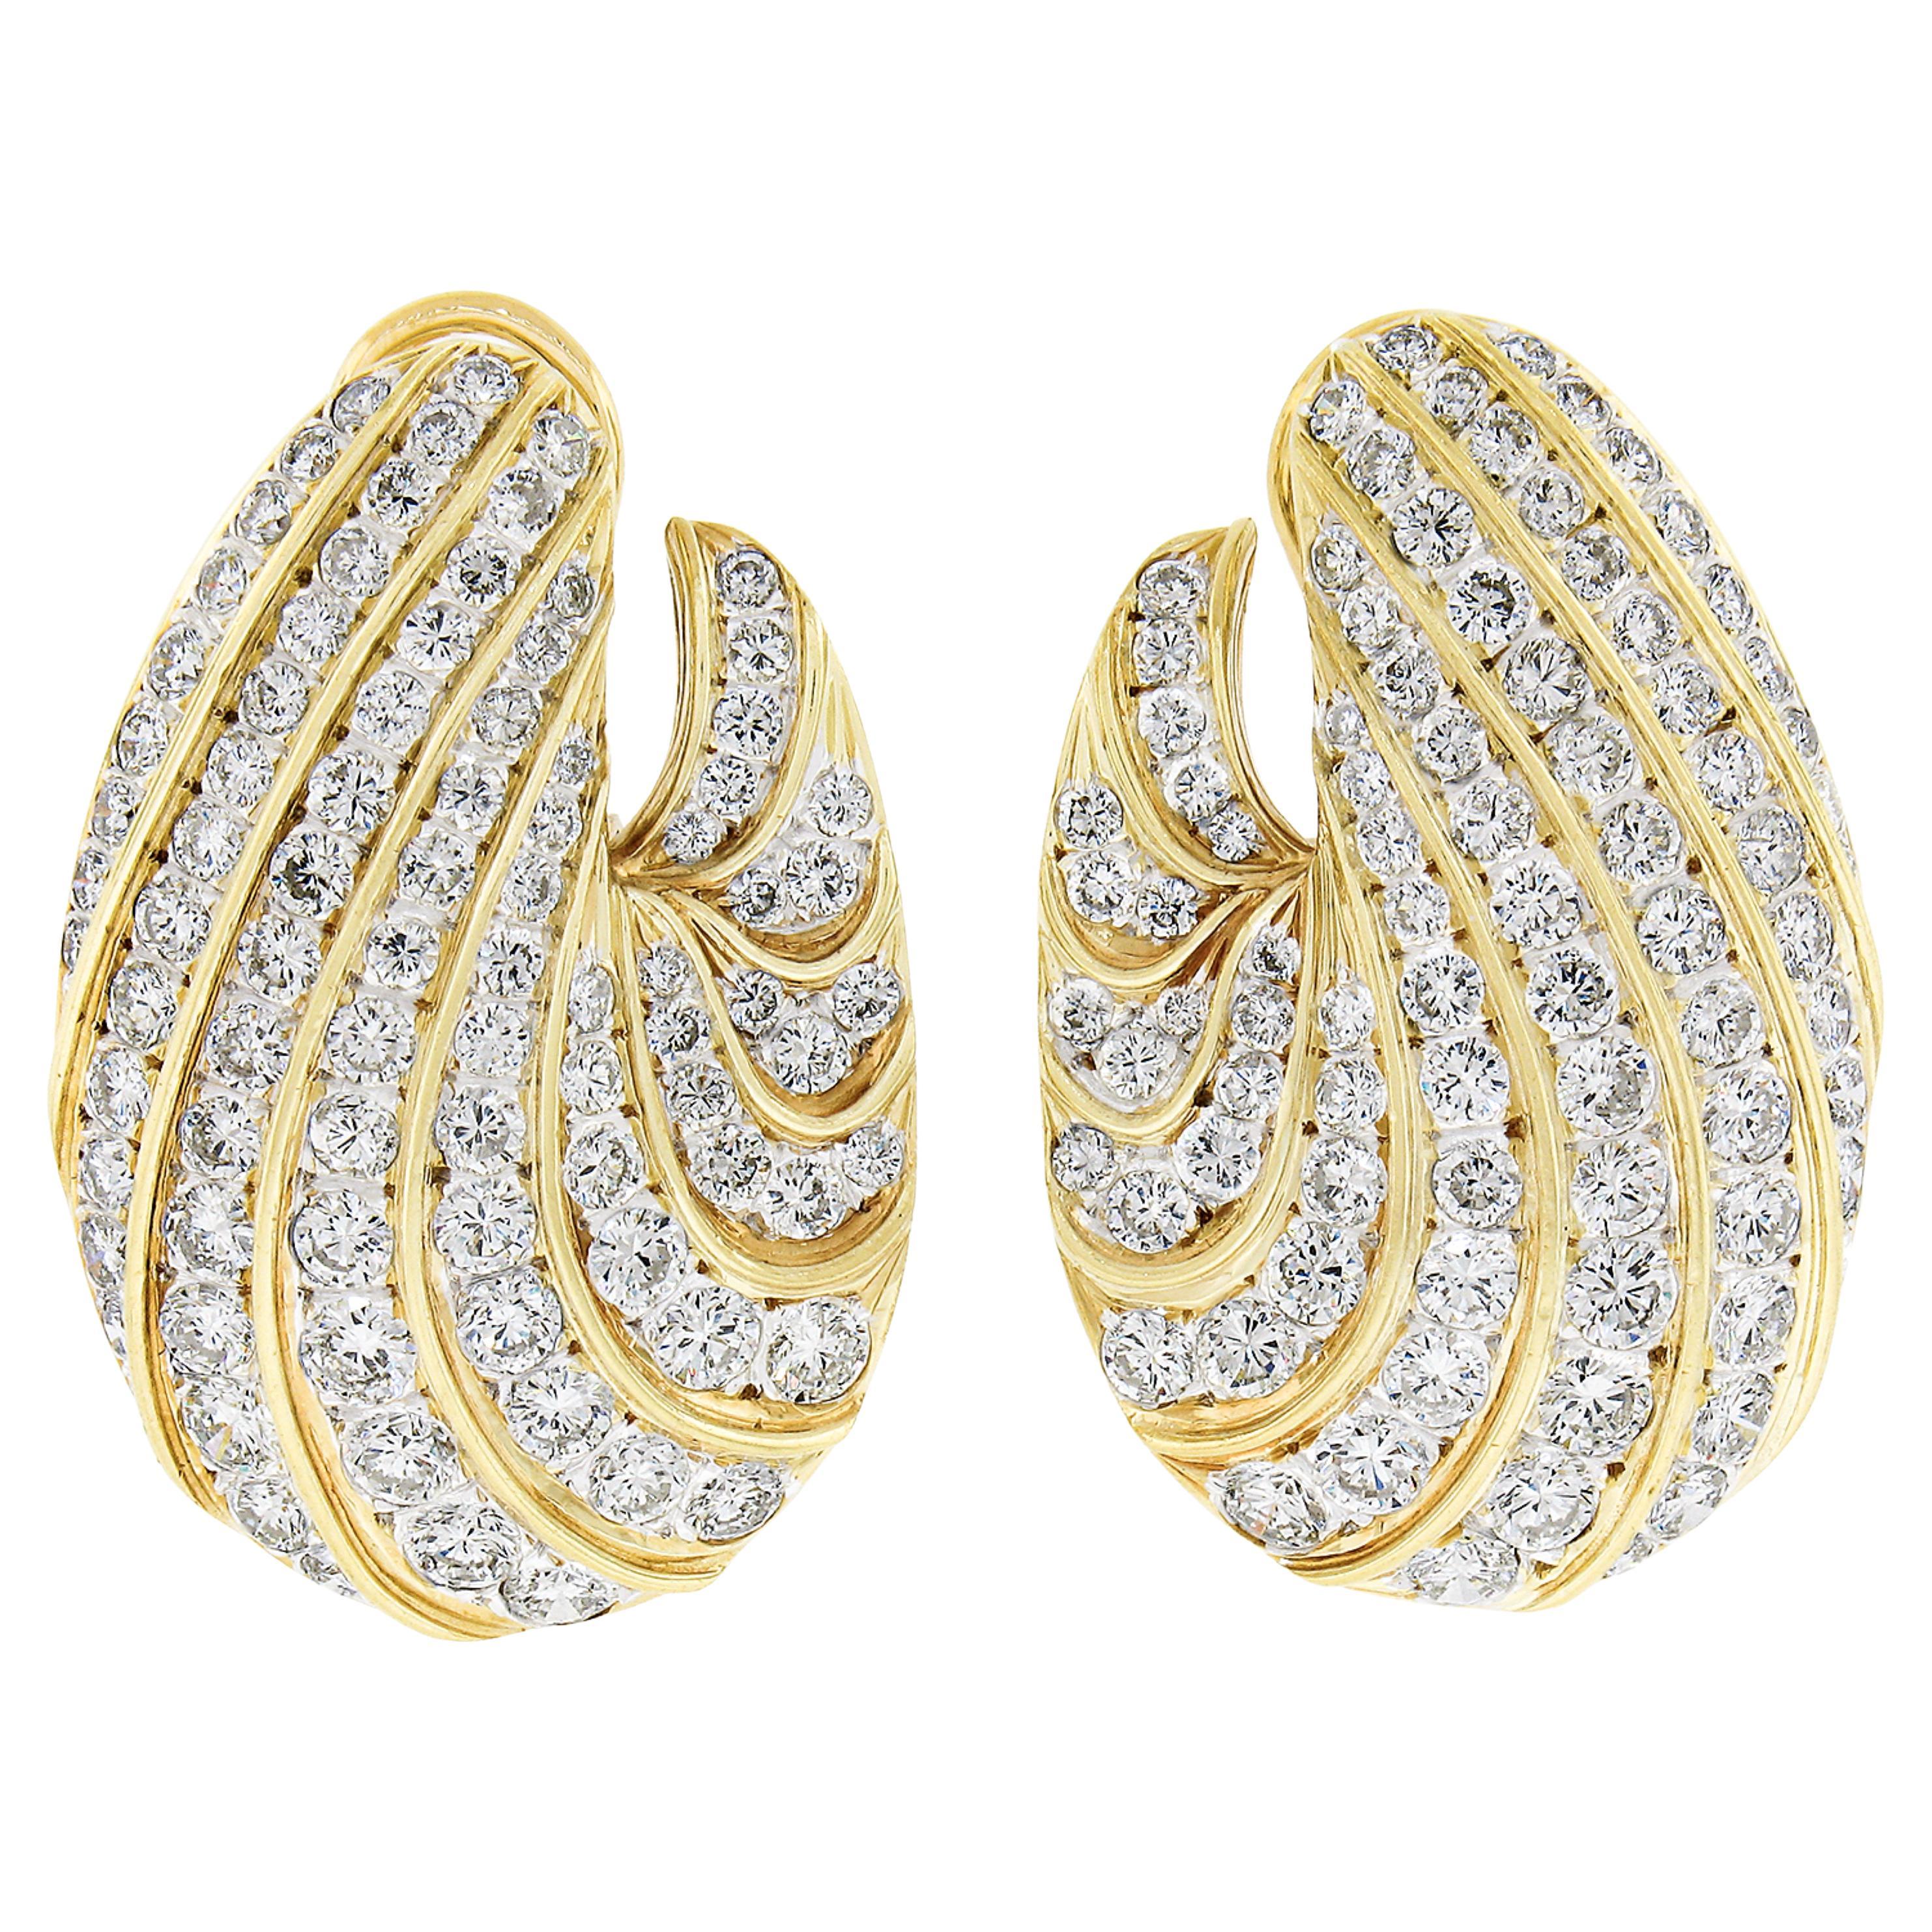 Grandes boucles d'oreilles Omega festonnées en or bicolore 18 carats 14 carats avec diamants fiers polis